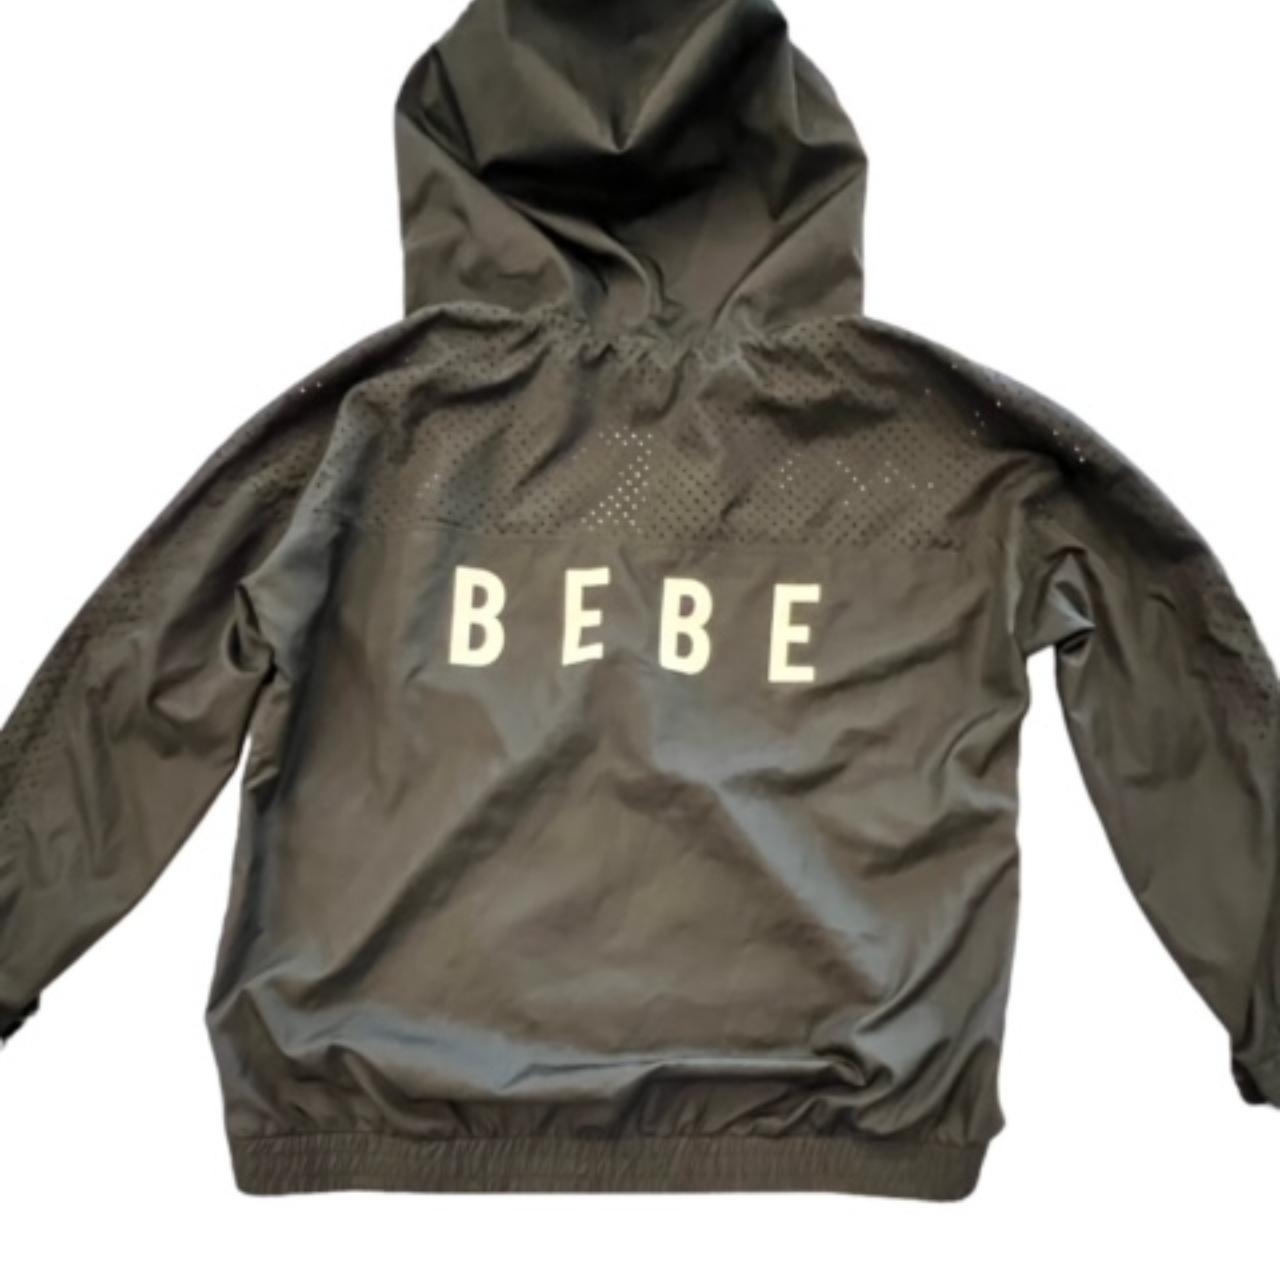 bebe SPORT Full Zip Windbreaker Jacket Size 1X Black... - Depop